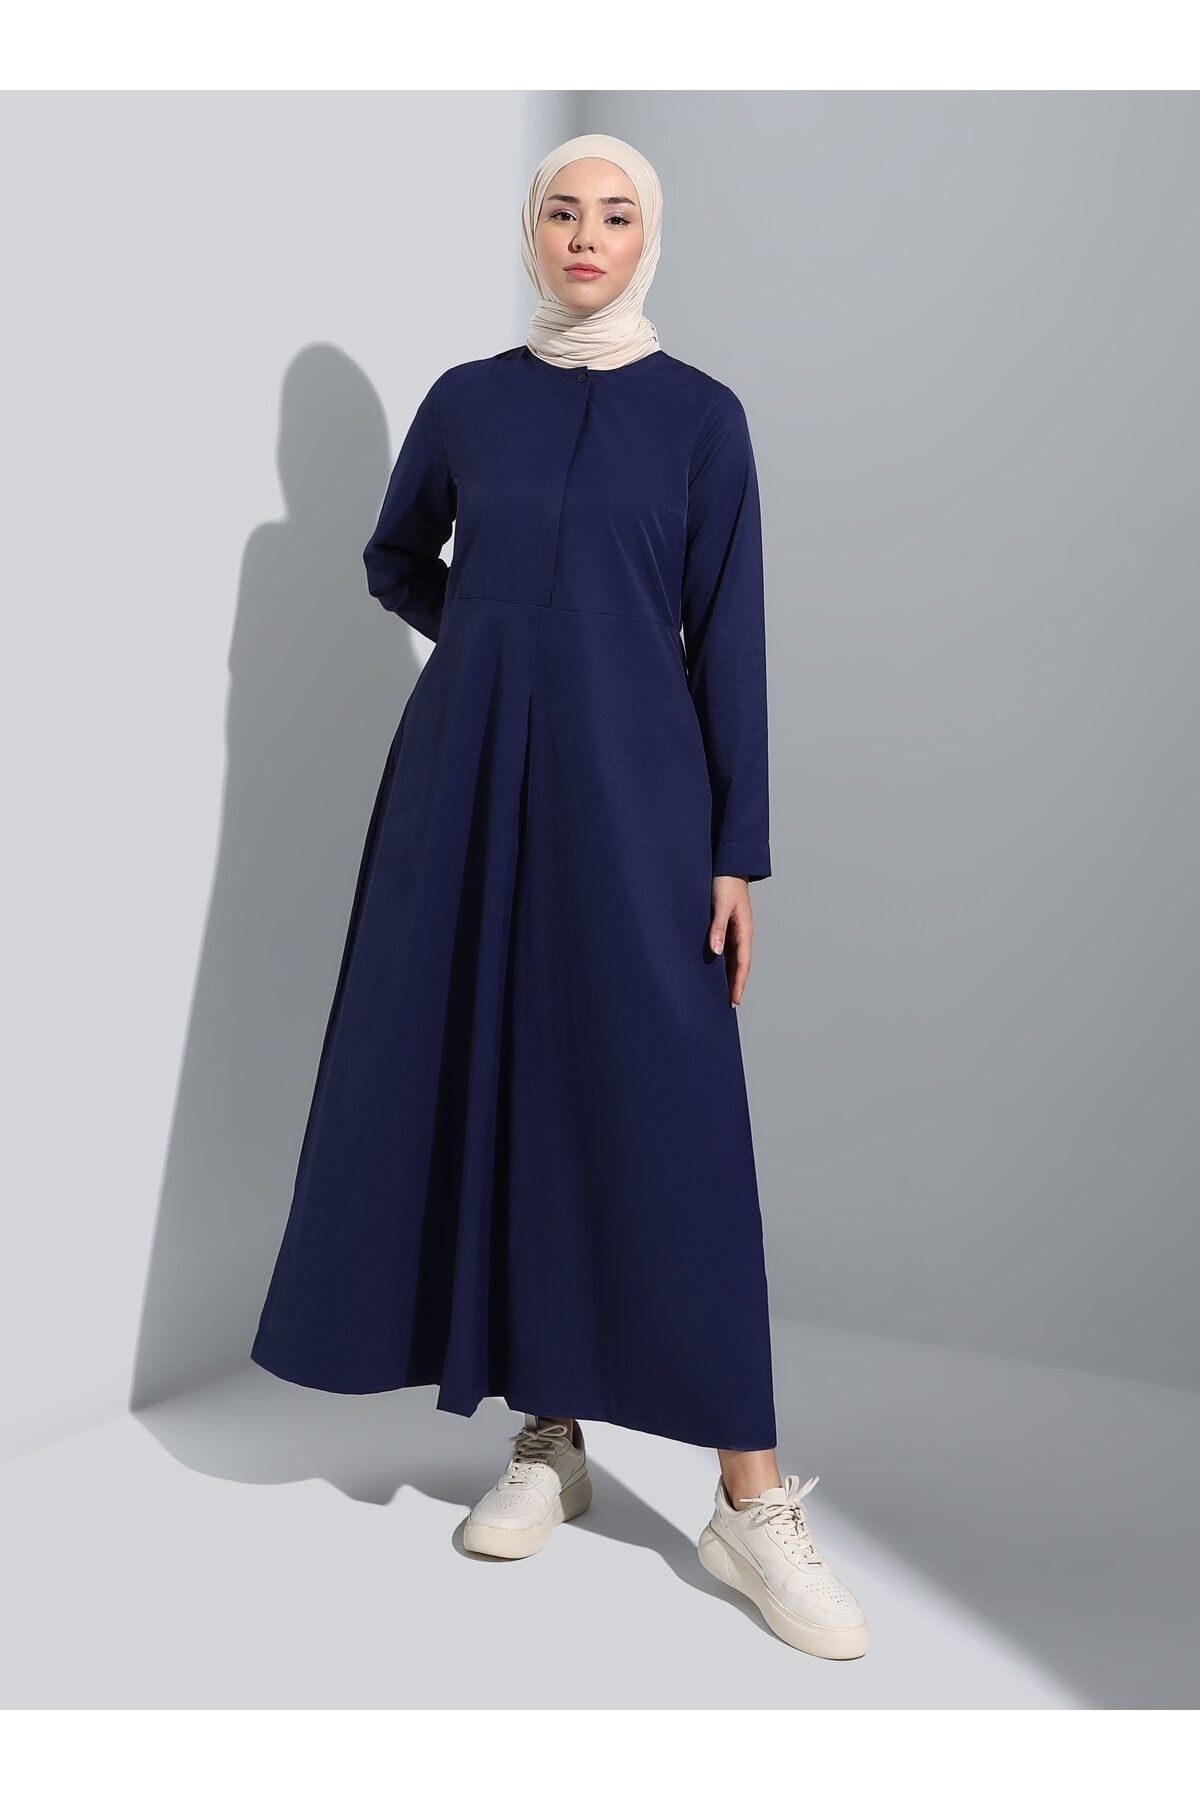 Refka Gizli Düğme Detaylı Poplin Tesettür Elbise - Lacivert - Refka Basic